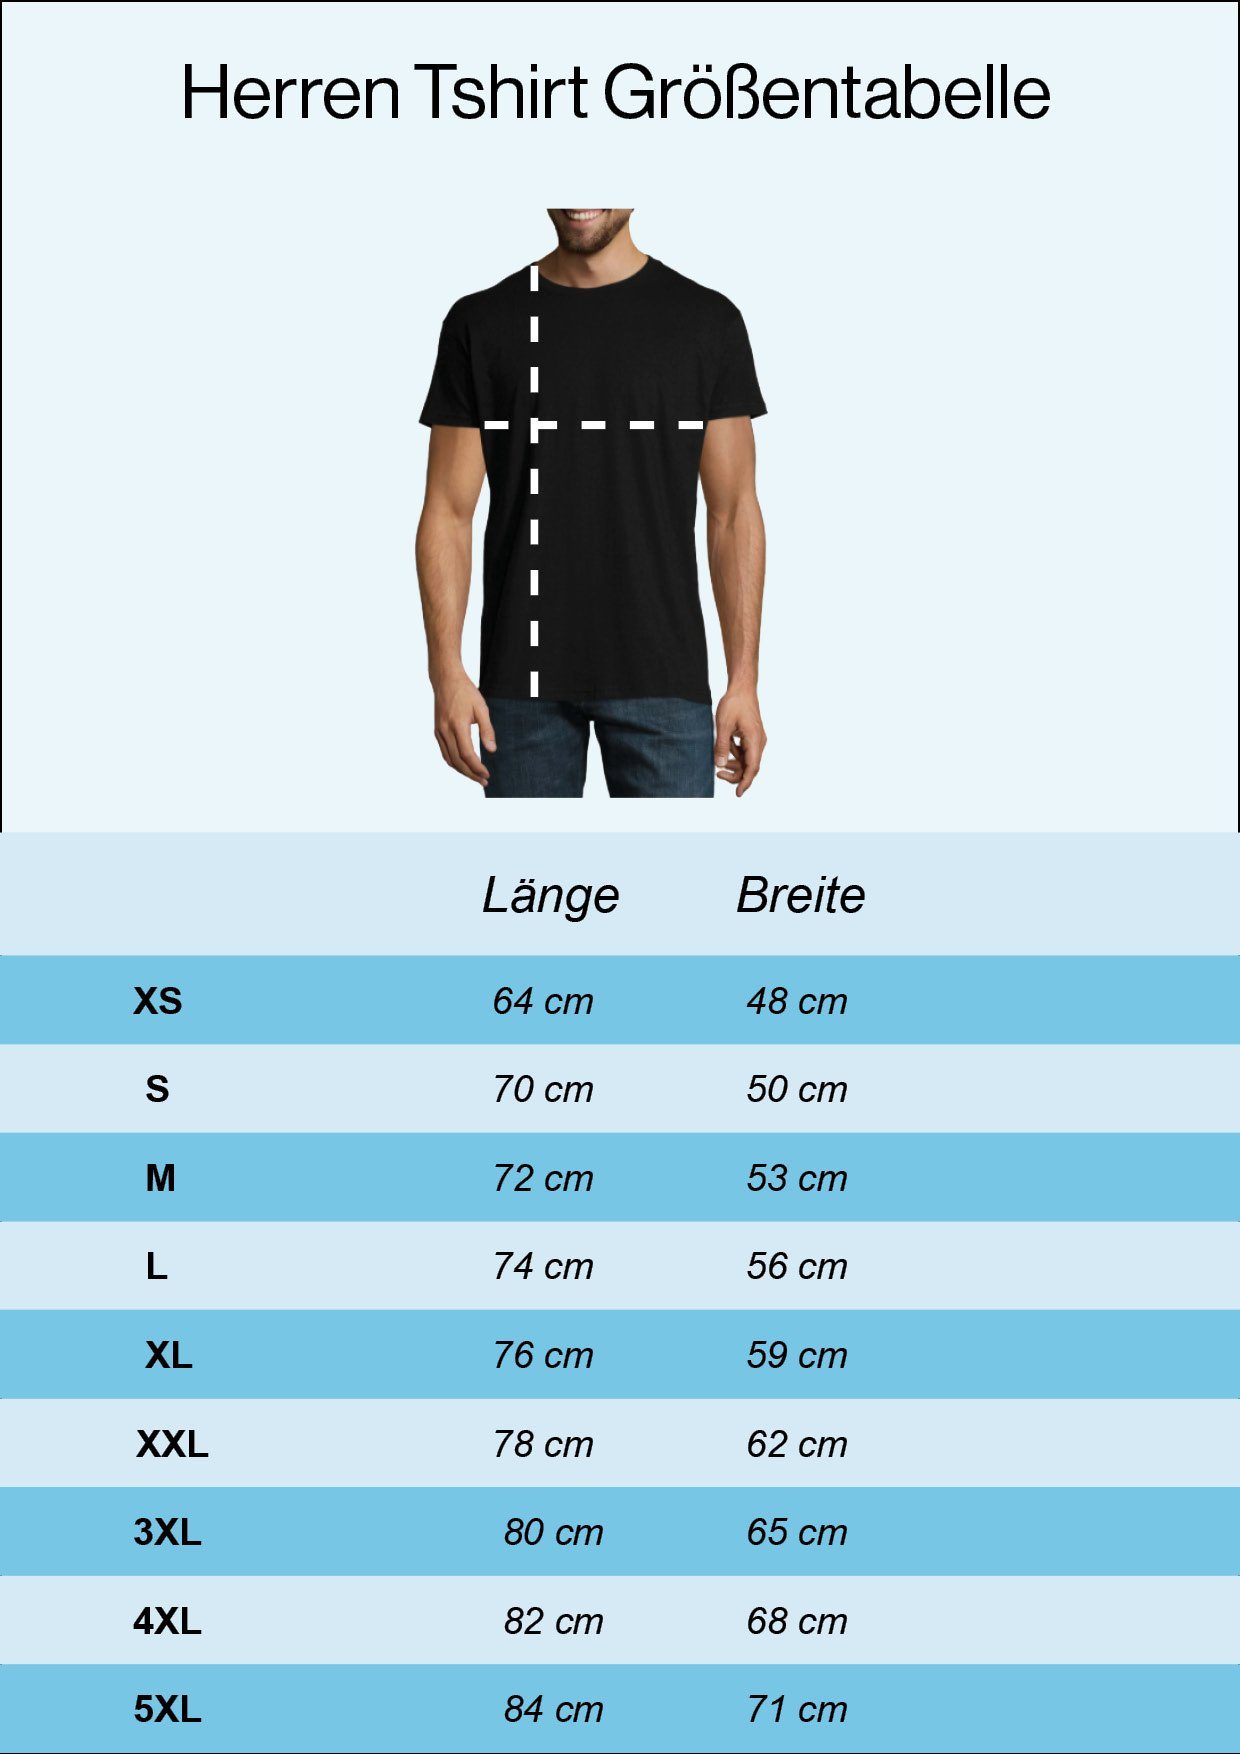 nach Herren mit der Hochzeit Designz Frontprint Navyblau T-Shirt Shirt Youth trendigem Evolution